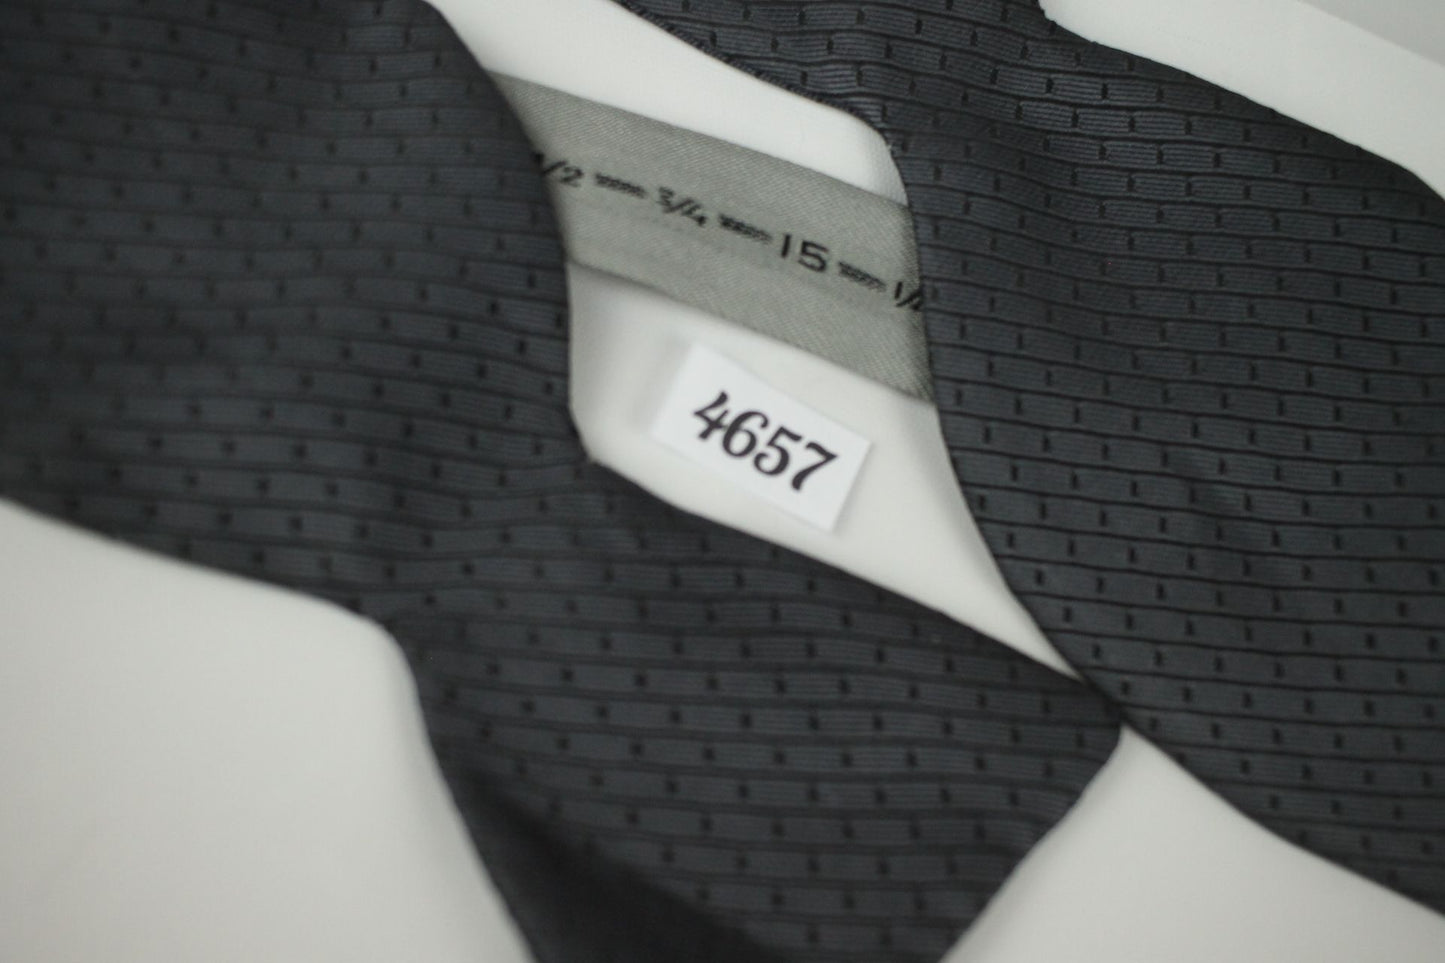 Vintage Grey Black Pattern Self Tie Thistle End Bow Tie